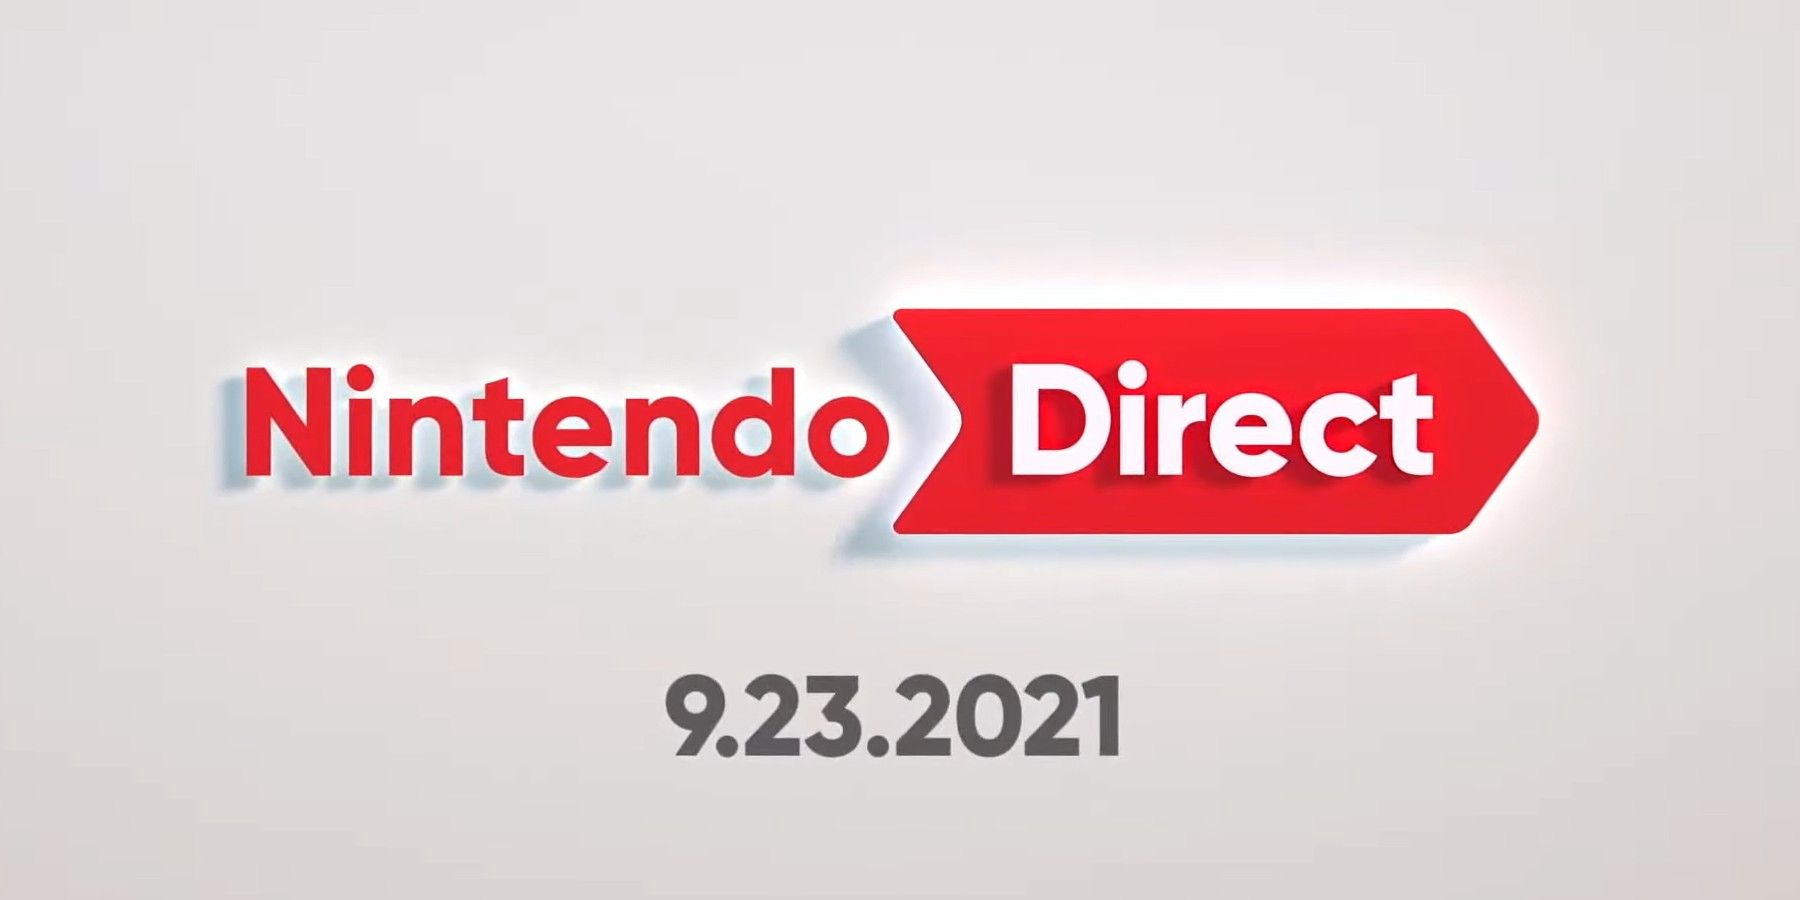 Şimdiye kadar 2021’deki tüm Nintendo Direct etkinlikleri